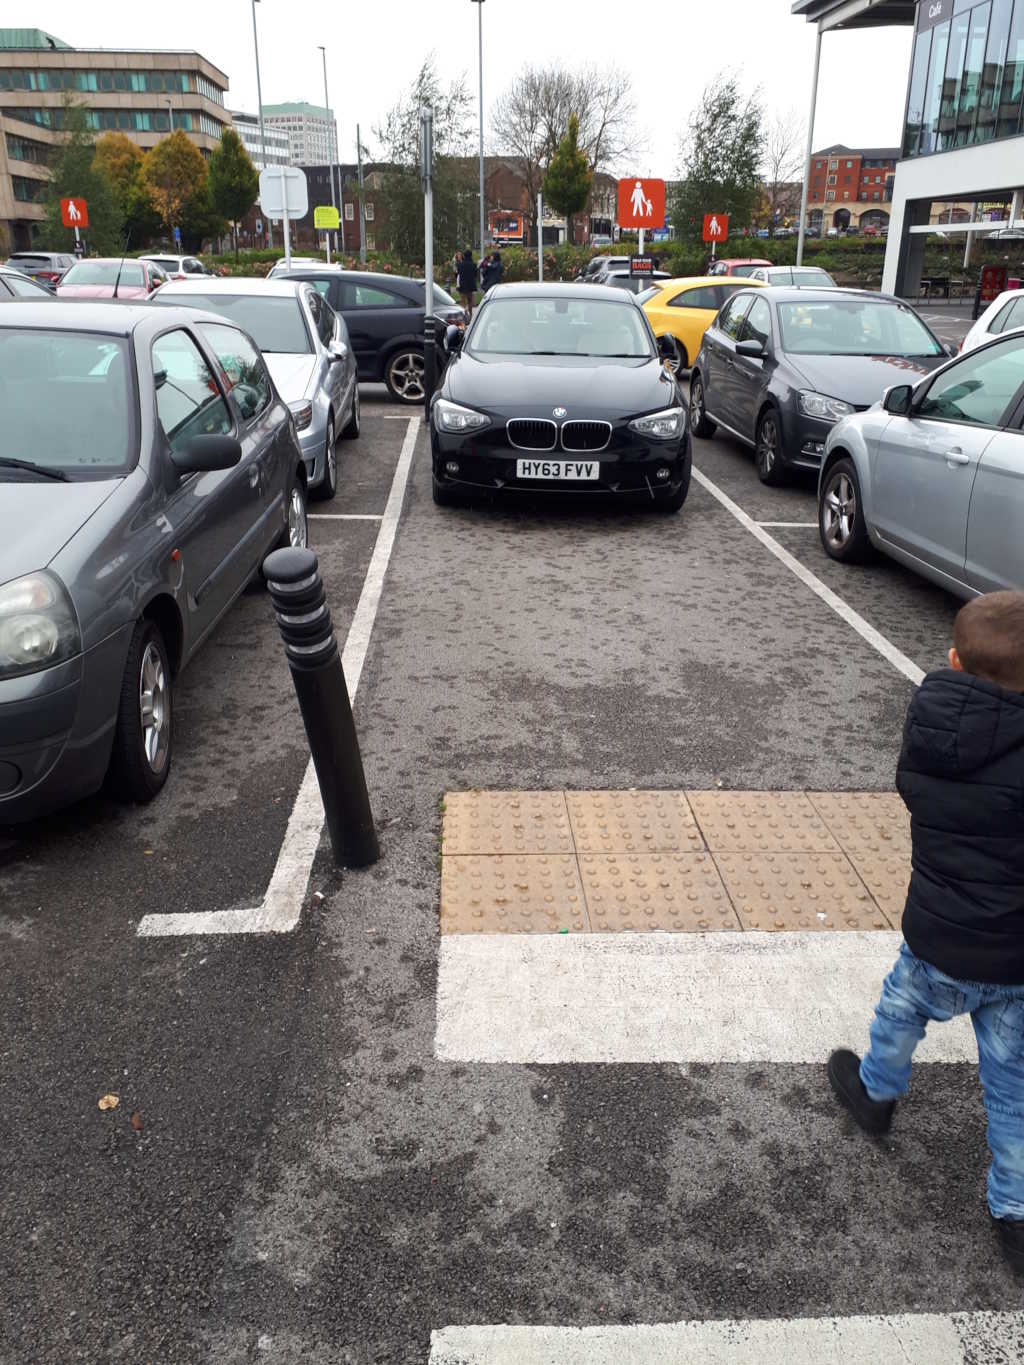 HY63 FVV displaying Selfish Parking